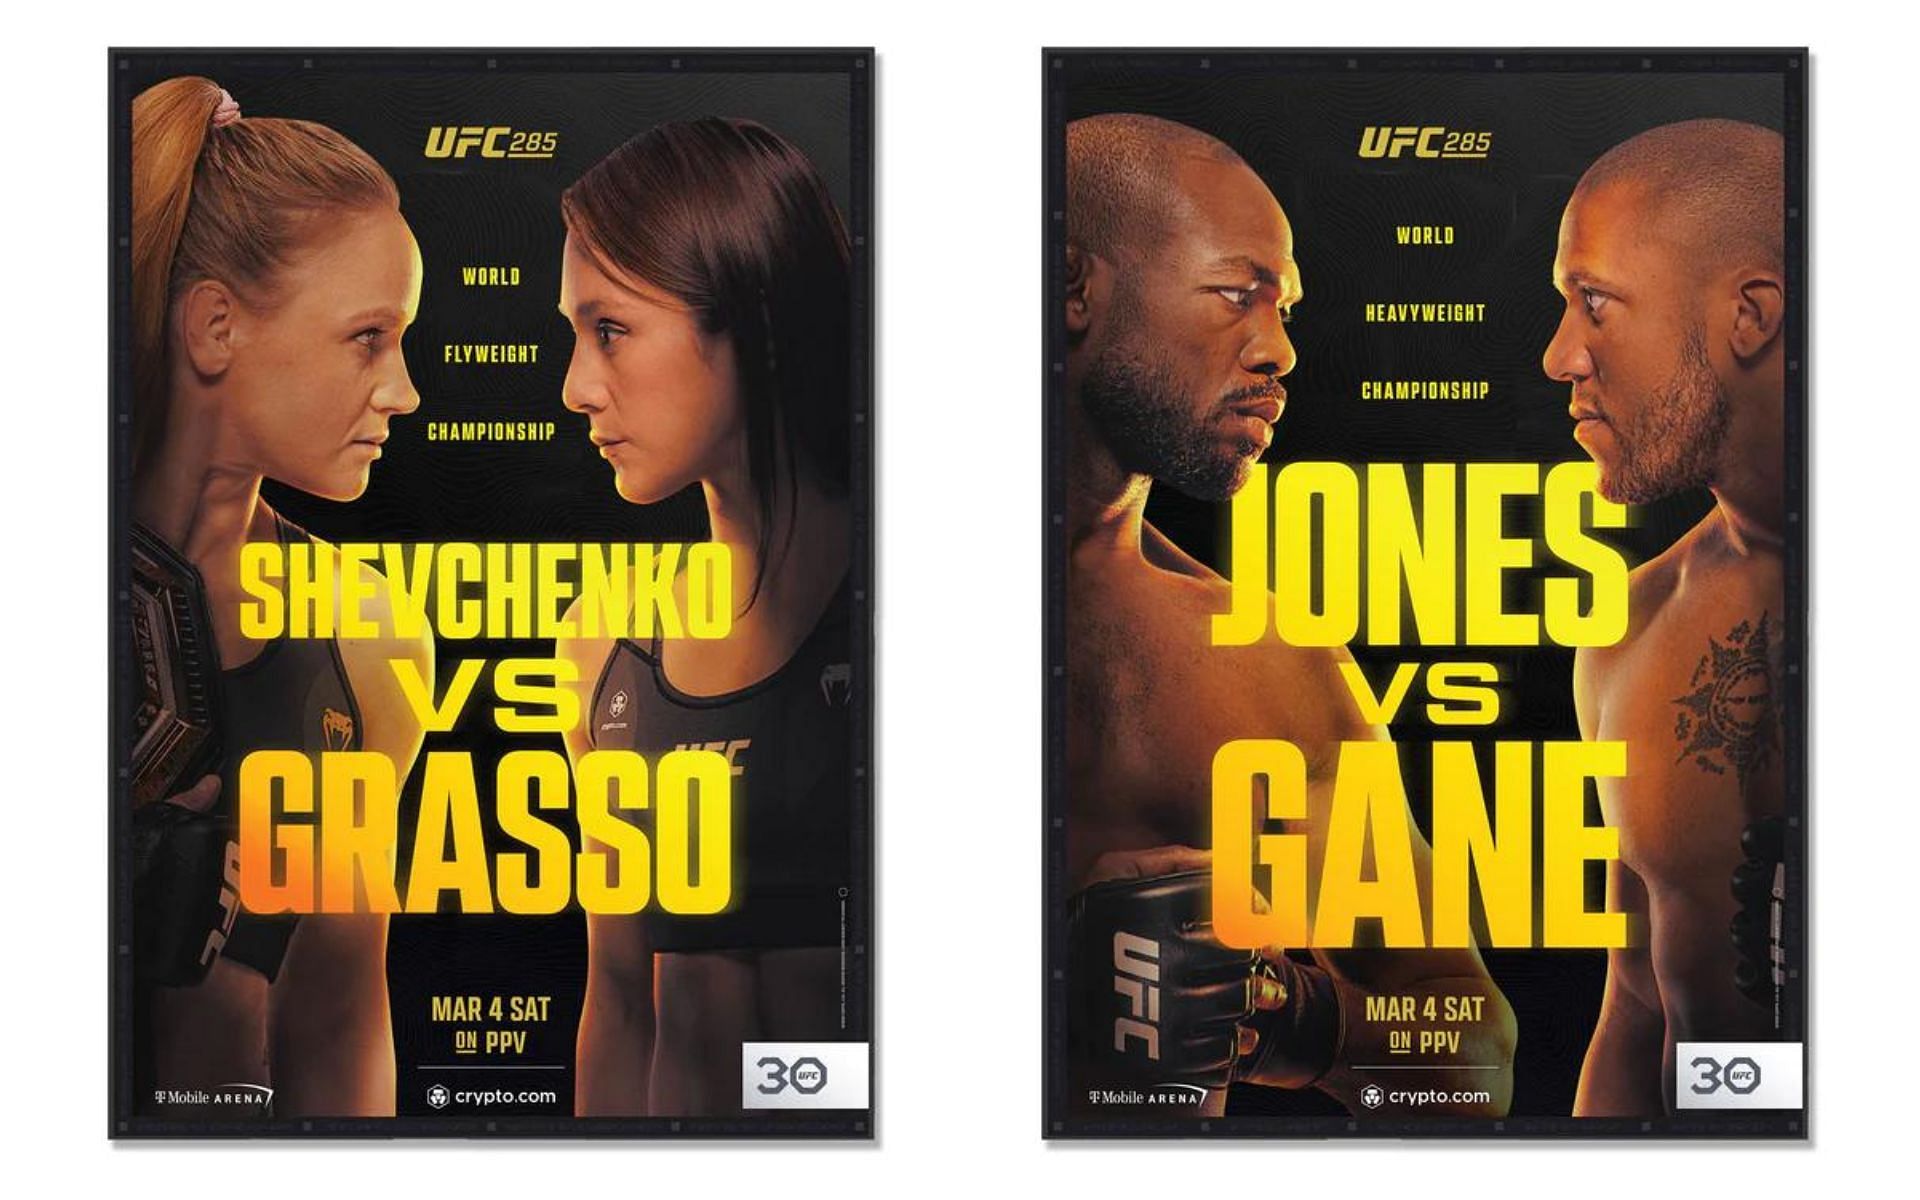 Shevchenko vs. Grasso [Left] Jones vs. Gane [Right] [Image courtesy: www.ufccollectibles.com]